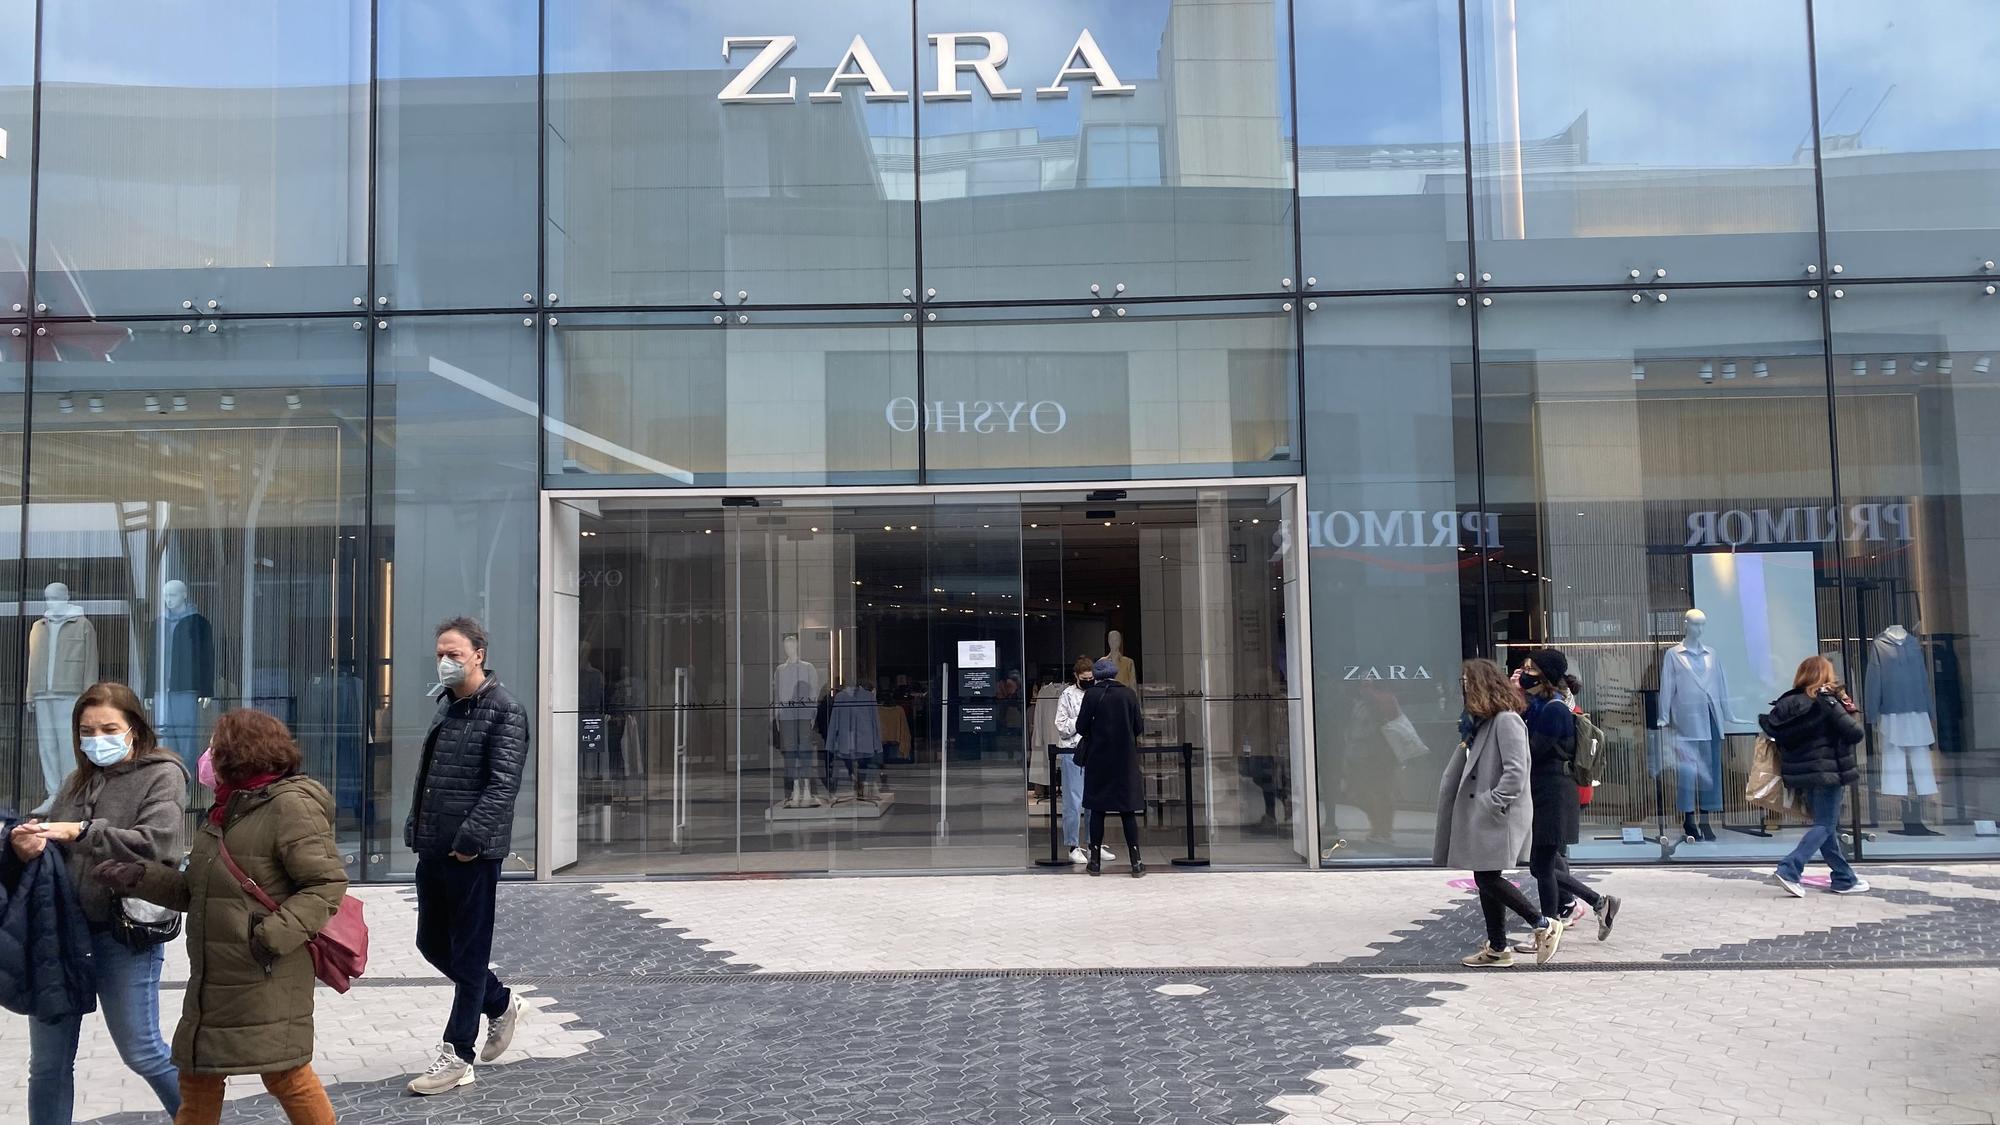 Tienda cerrada de Zara (Inditex) en el centro comercial Glòries durante la pandemia.